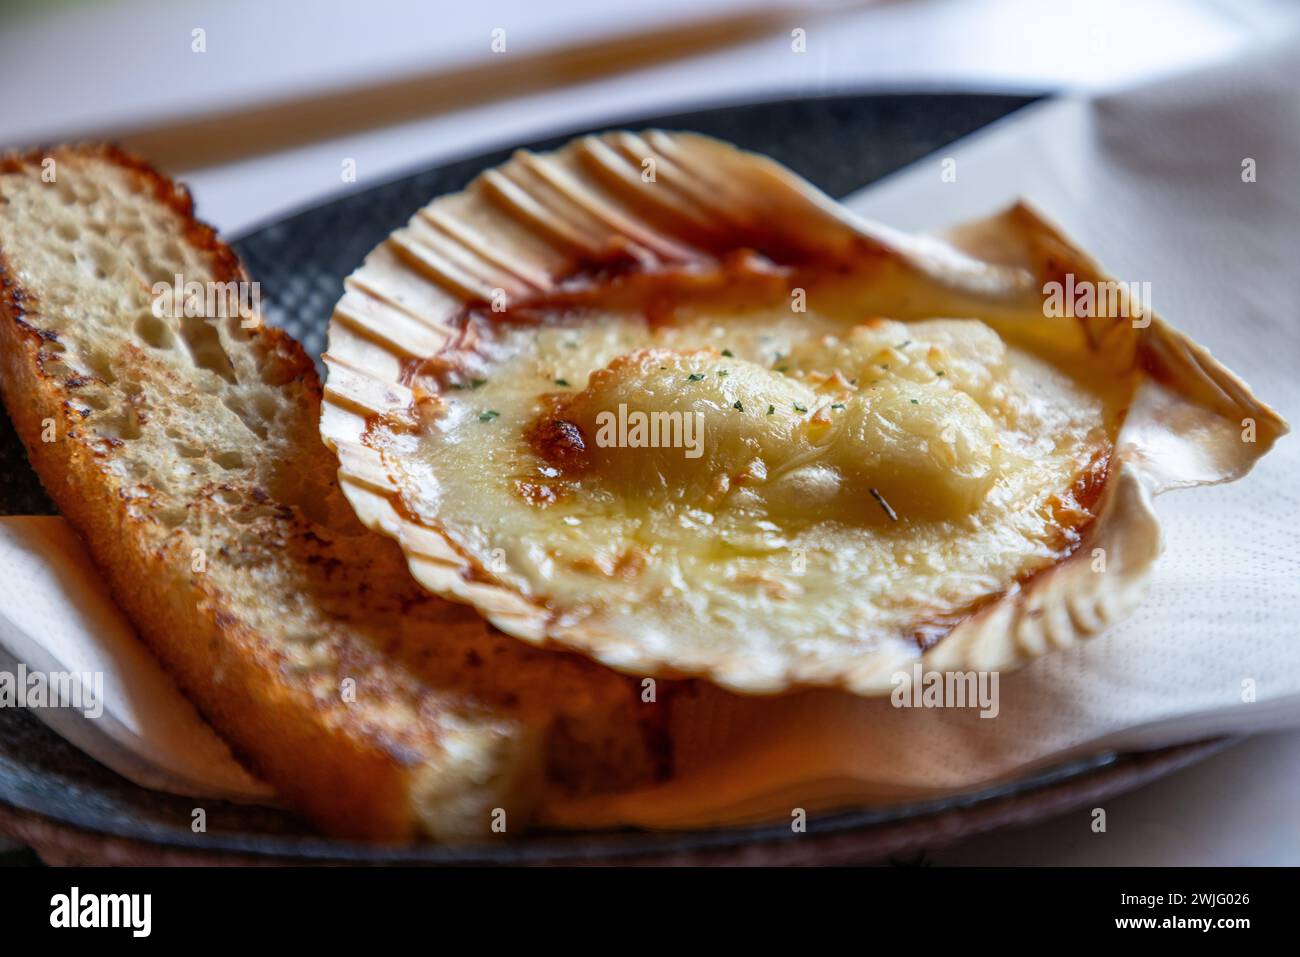 Un Saint-Jacques parfaitement cuit, gratiné au fromage, servi dans sa coquille avec du pain croustillant, une délicatesse des îles Lofoten. Norvège Banque D'Images